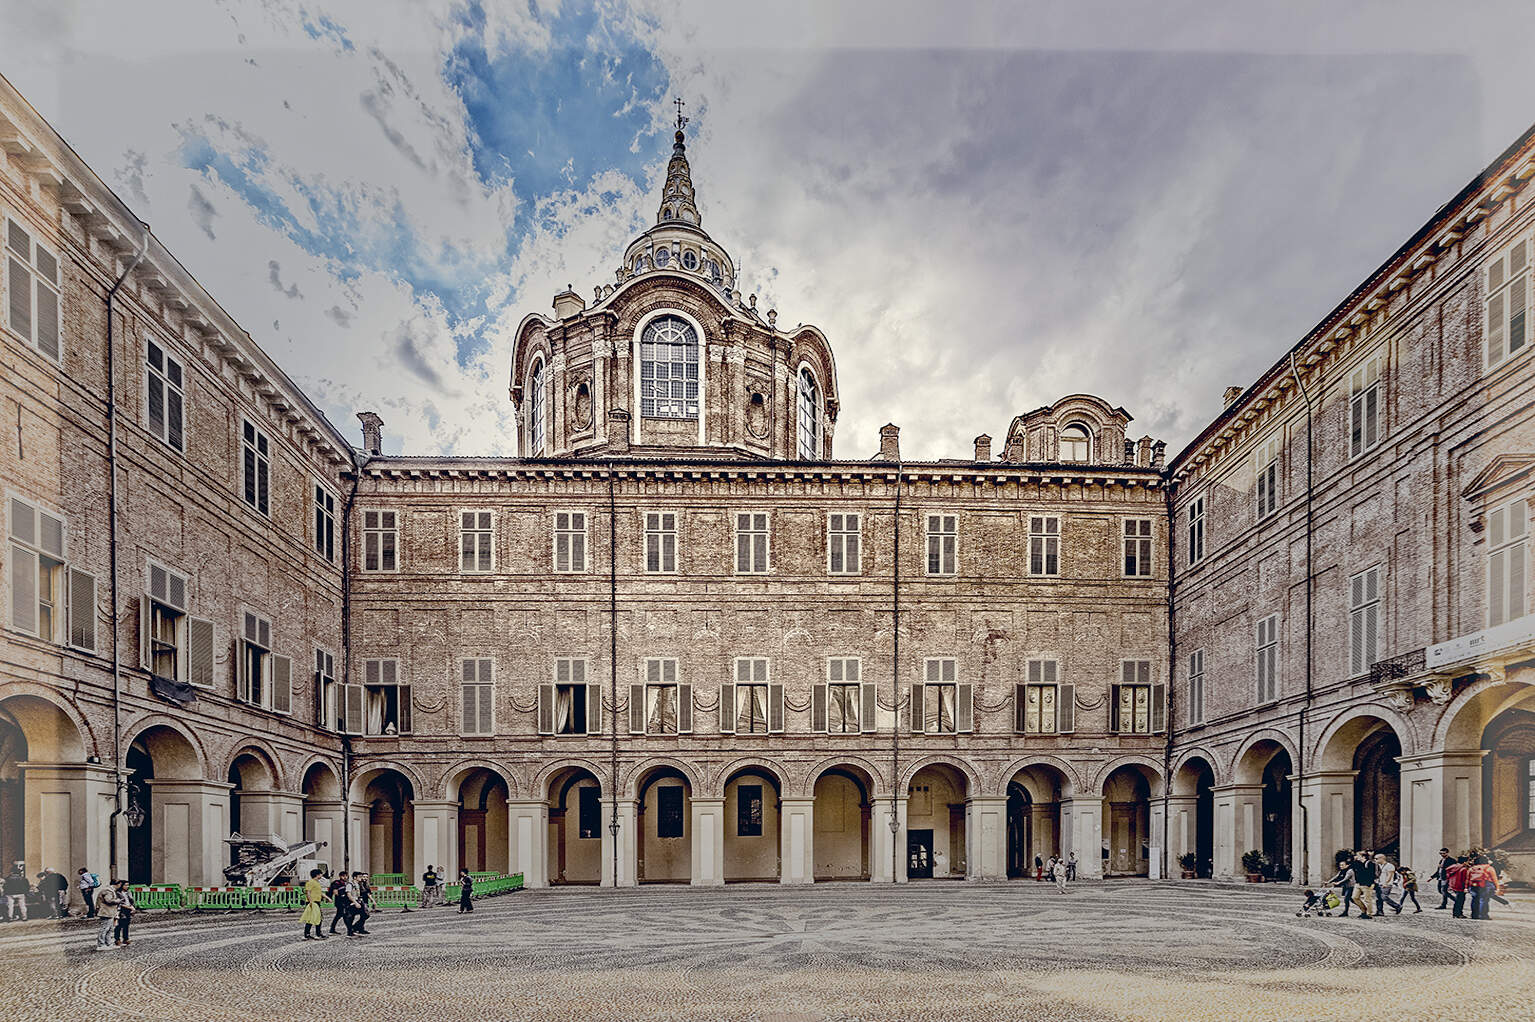 <img src="Torino_Cortile di Palazzo Reale e cupola del Guarini©Toni Spagone.jpg"